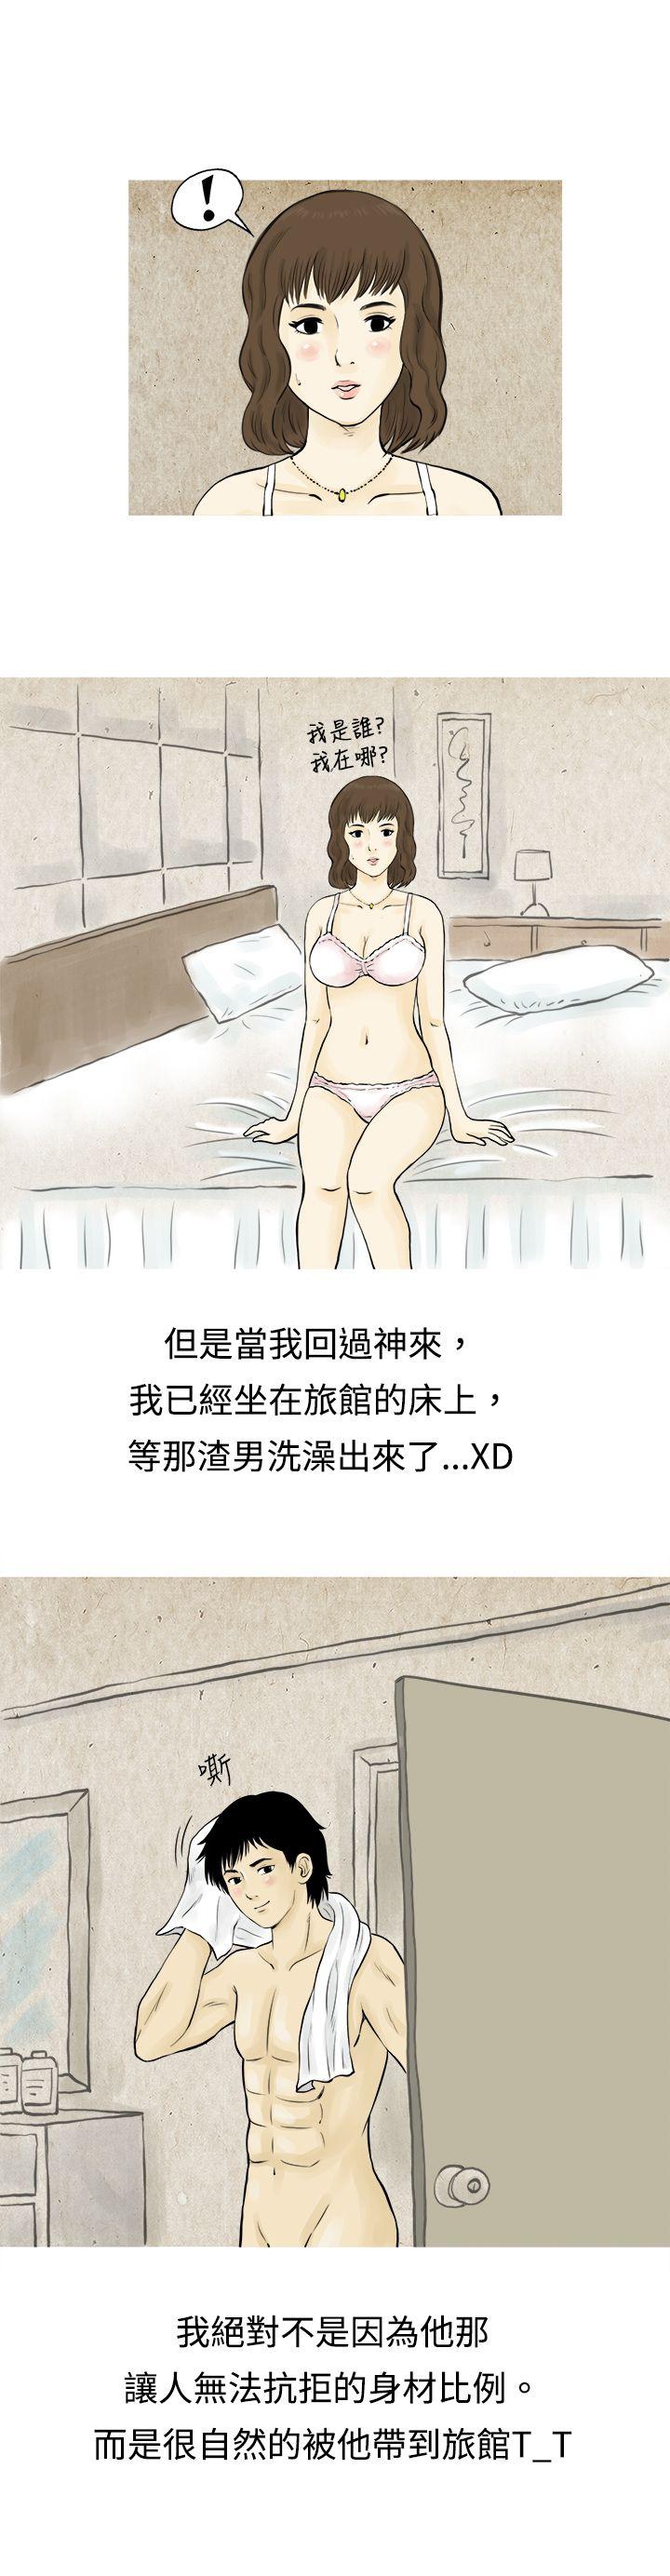 秘密Story  遇到渣男的旅馆逃亡记(上) 漫画图片5.jpg